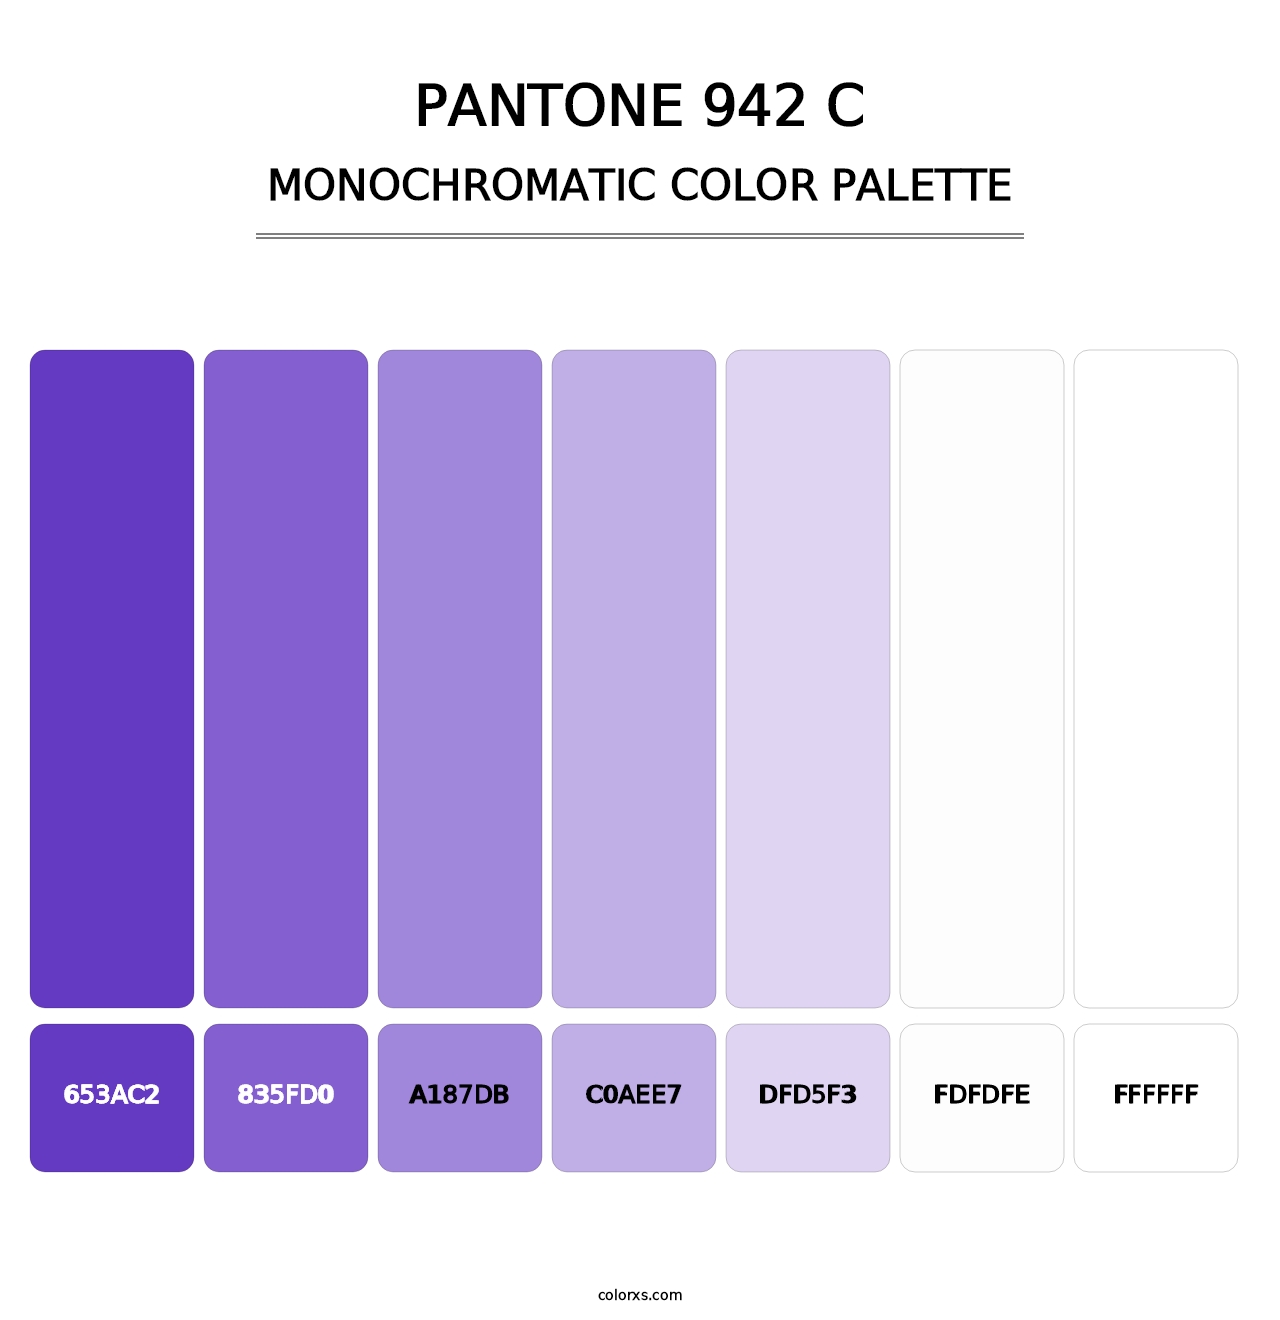 PANTONE 942 C - Monochromatic Color Palette